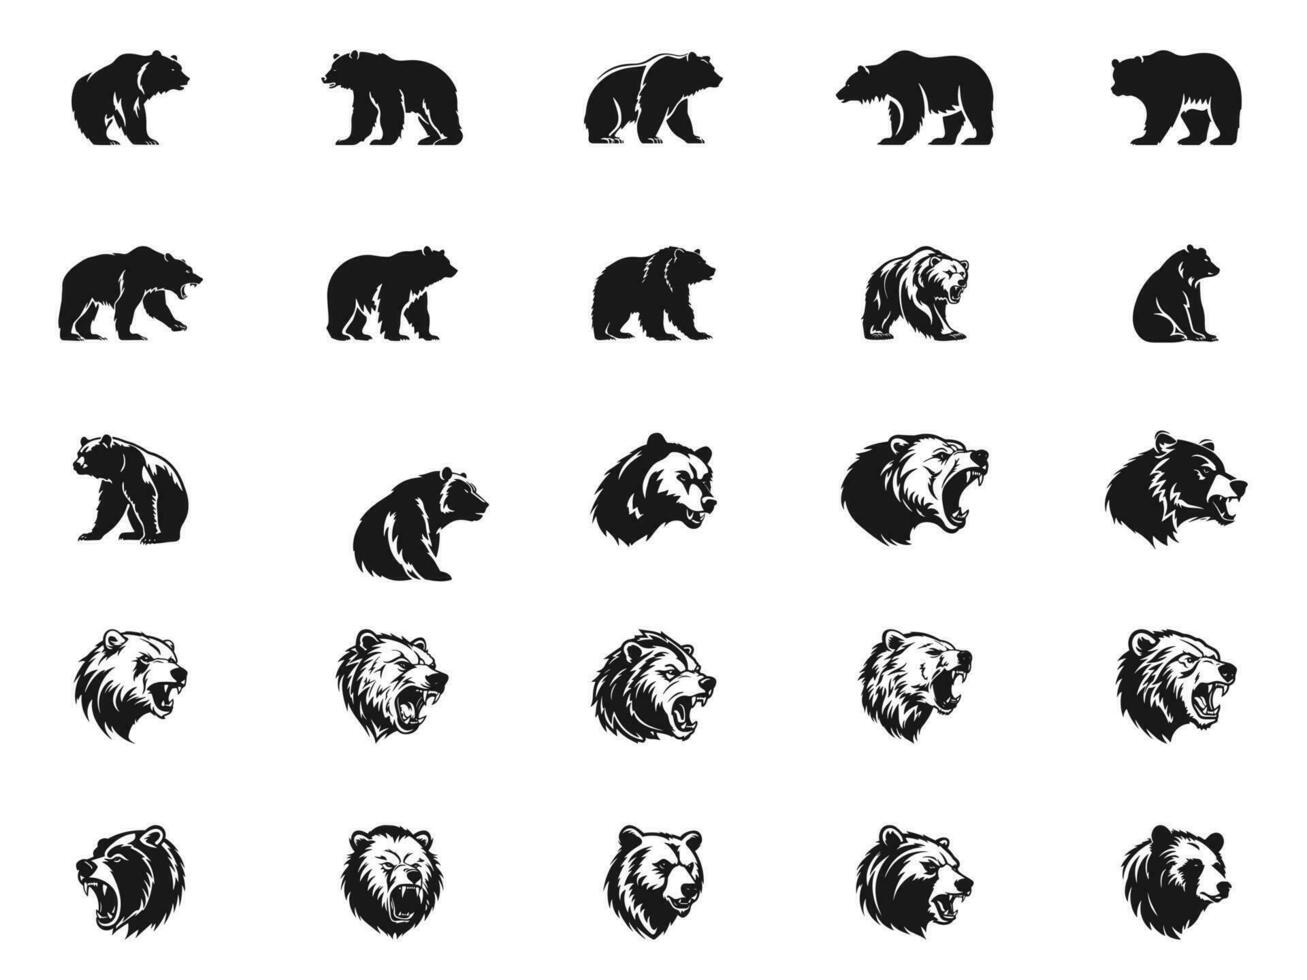 grafisch einstellen von Bären auf Schwarz, Grizzly Bär und Panda Vektor Elemente. Bären zum Drucken, entwerfen, tätowieren und Logo